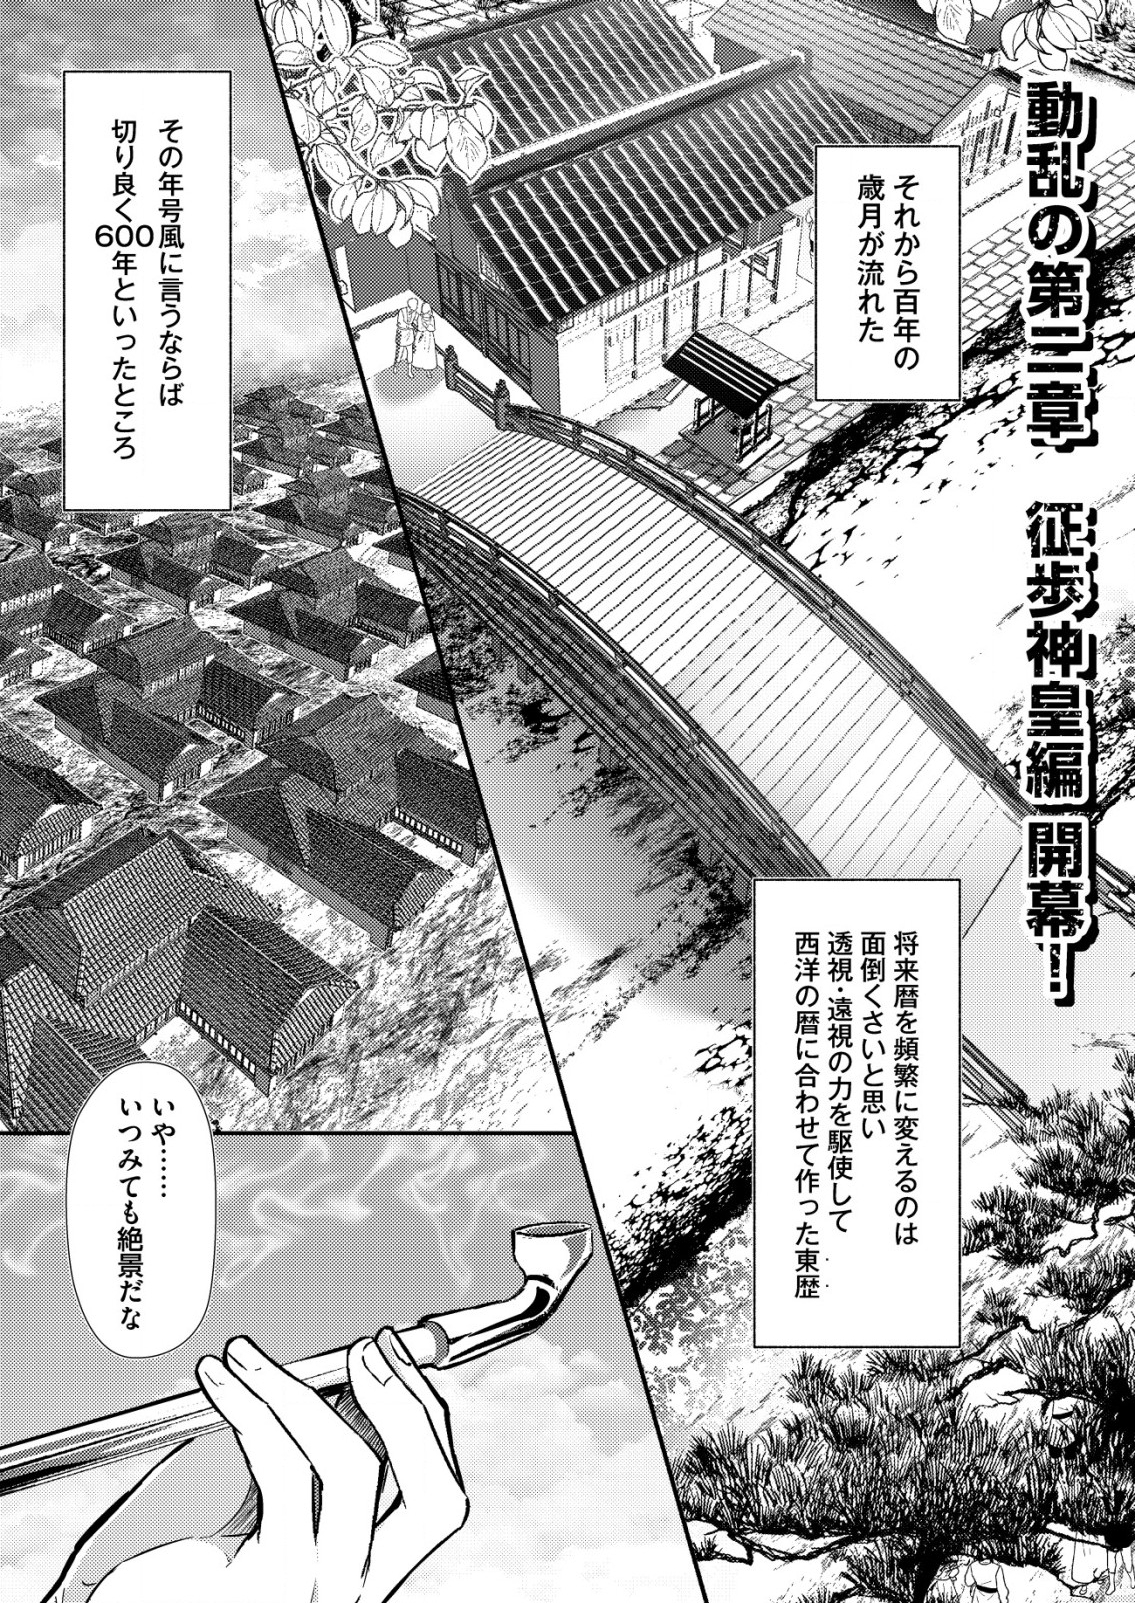 Isekai De kenja No Ishi To Yoba Rete Imasu - Chapter 19 - Page 1